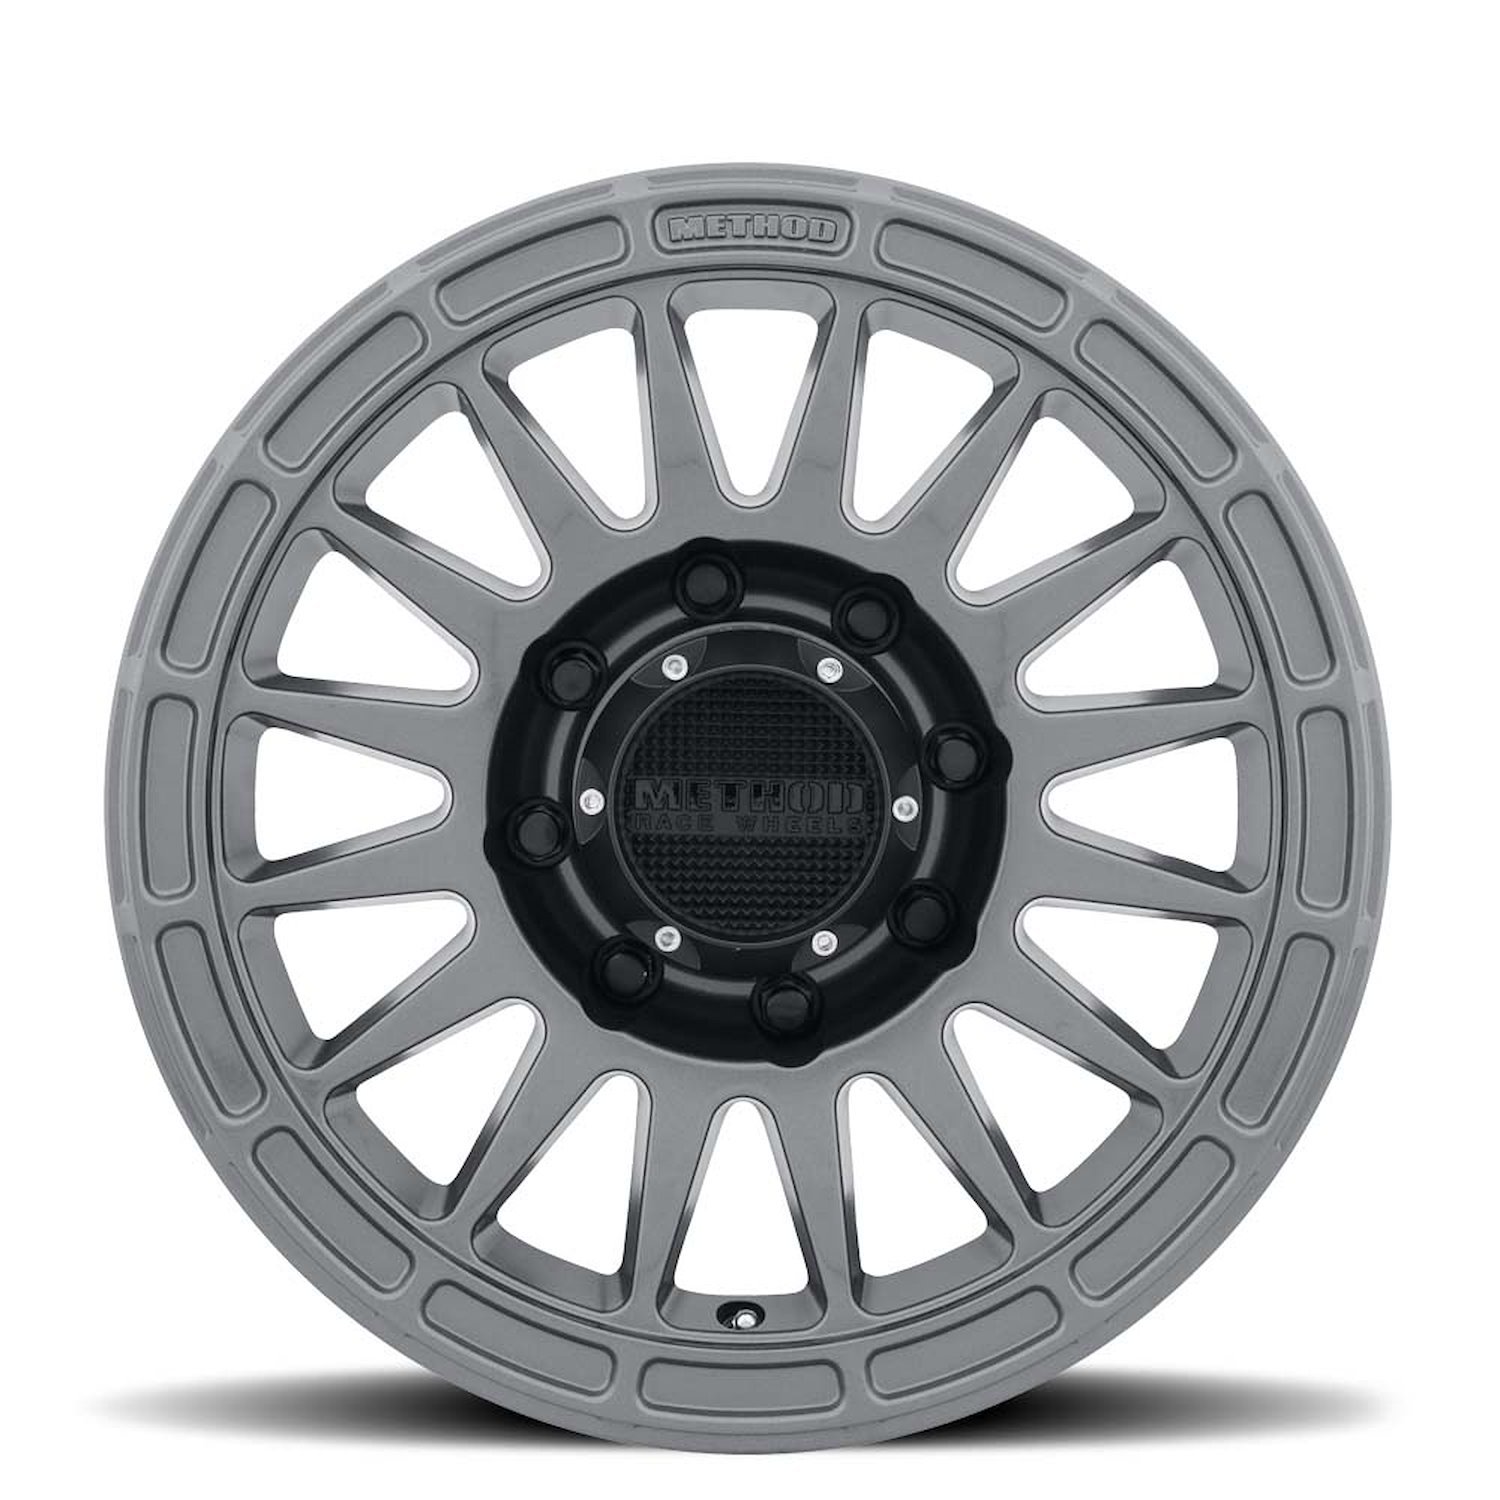 MR31478580800 STREET MR314 Wheel [Size: 17" x 8.5"] Gloss Titanium